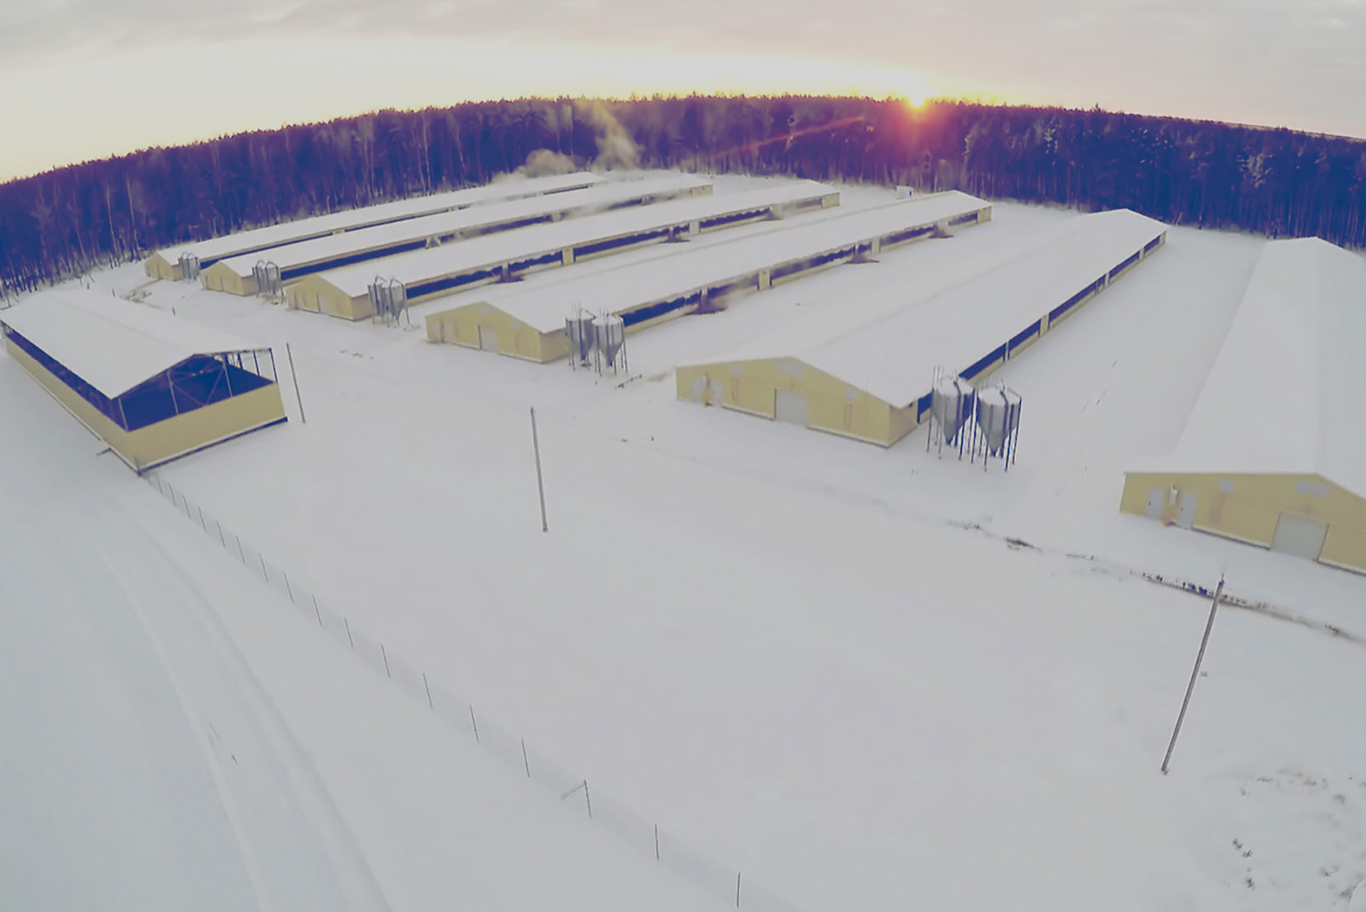 Industrial sized farm in winter 